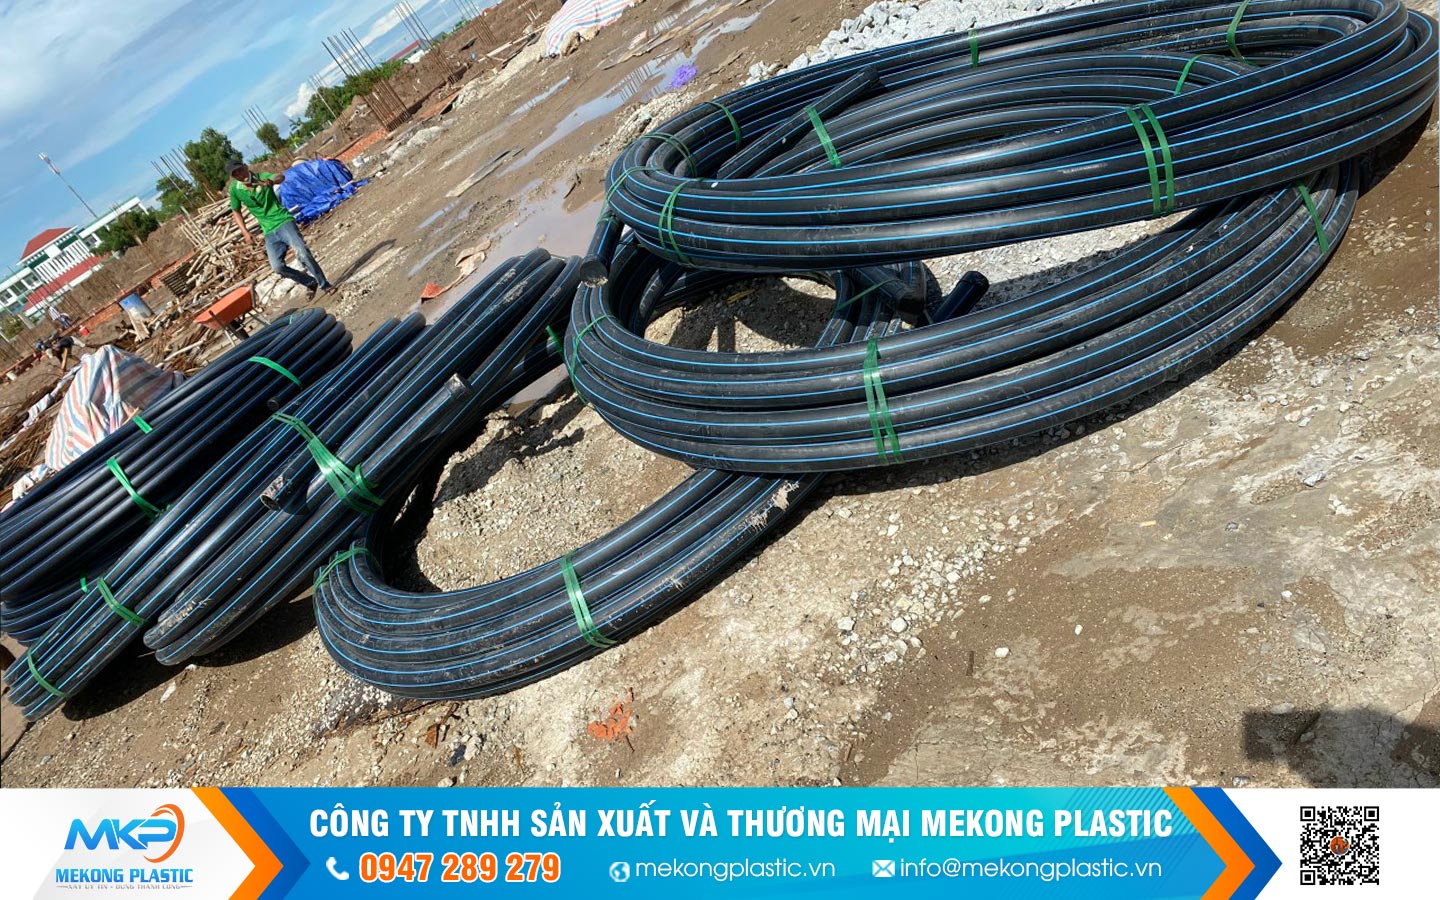 Tư vấn chọn mua ống HDPE cuộn Mekong Plastic